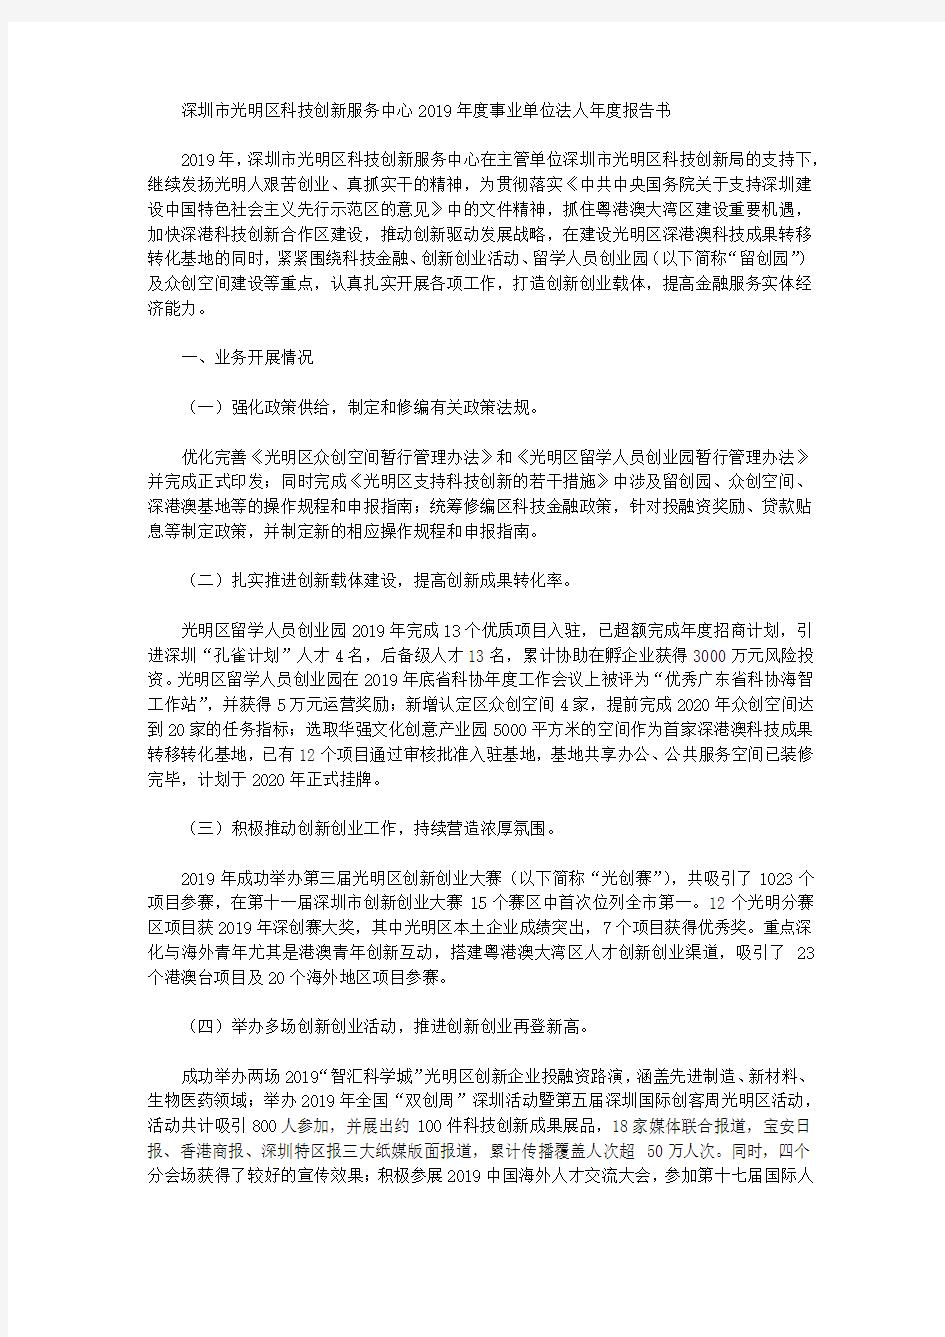 深圳市光明区科技创新服务中心2019年度事业单位法人年度报告书